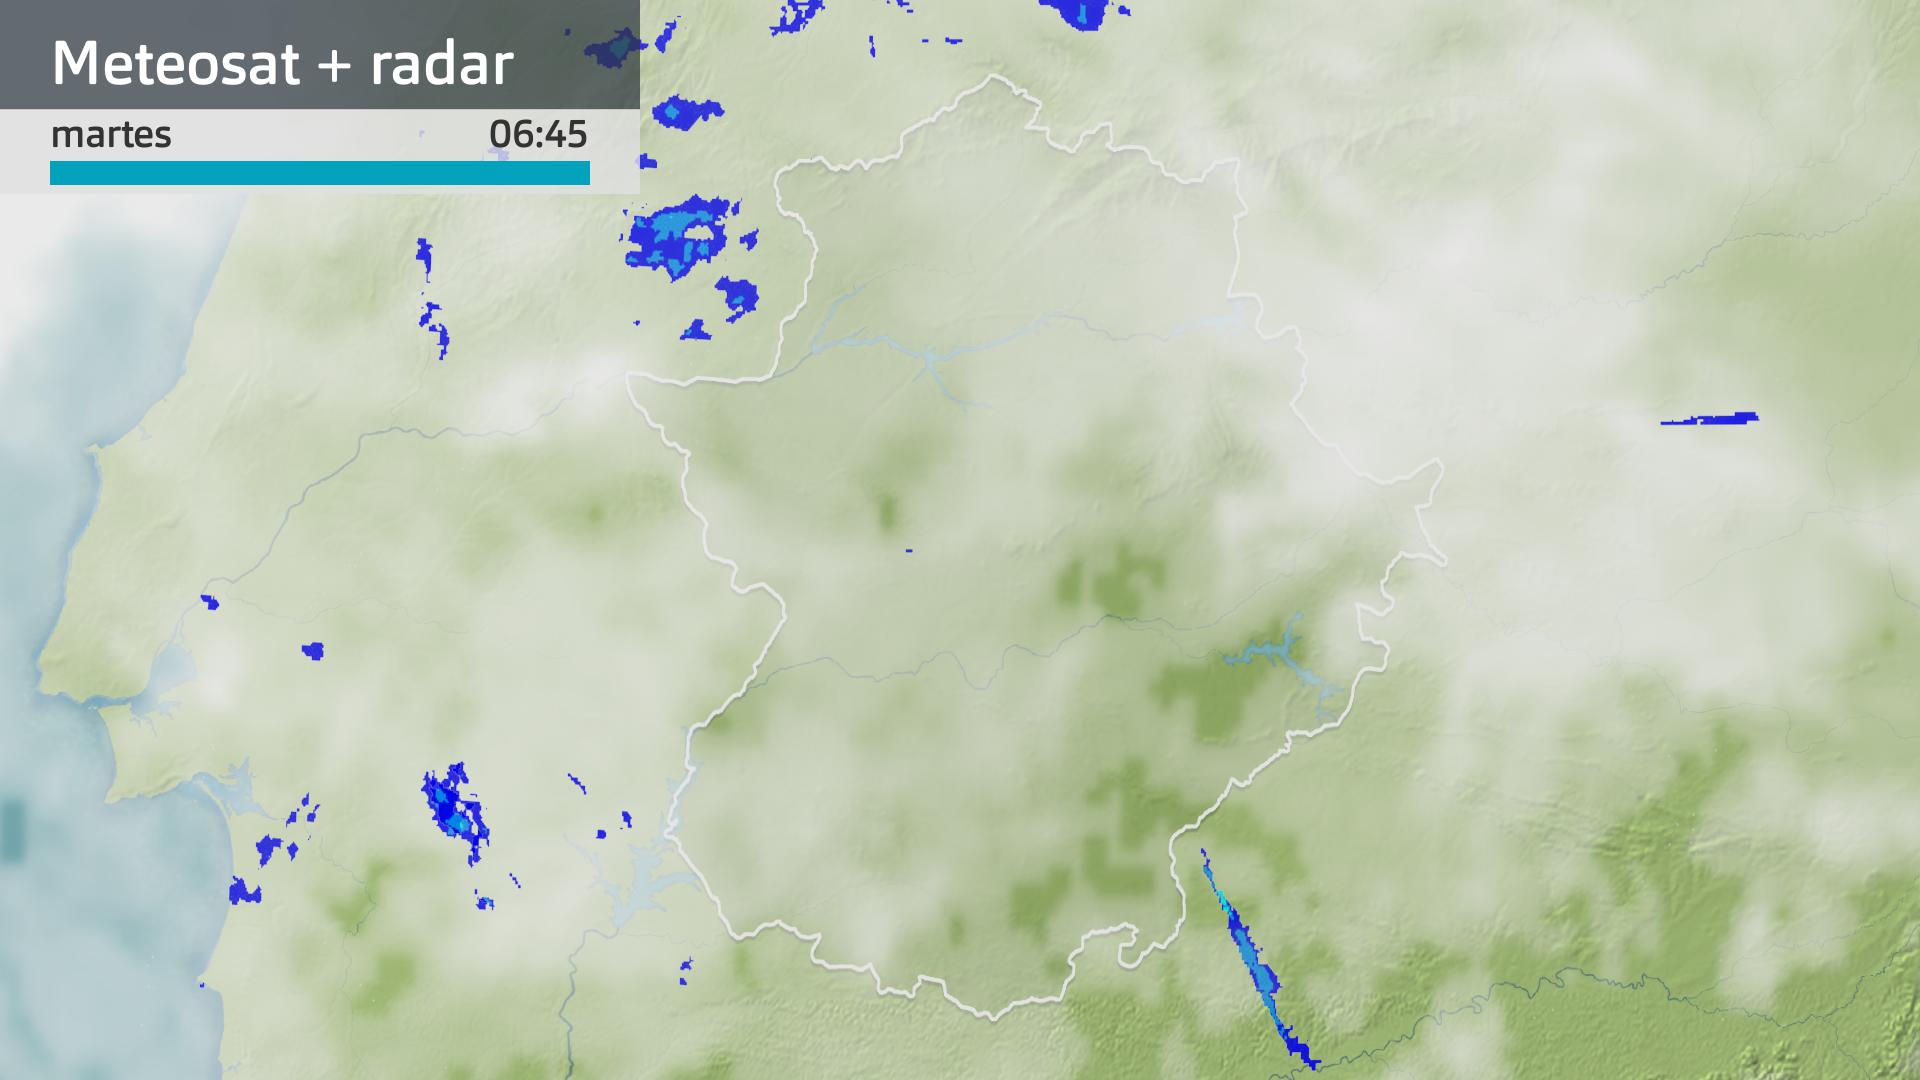 Imagen del Meteosat + radar meteorológico martes 2 de abril 6:45 h.